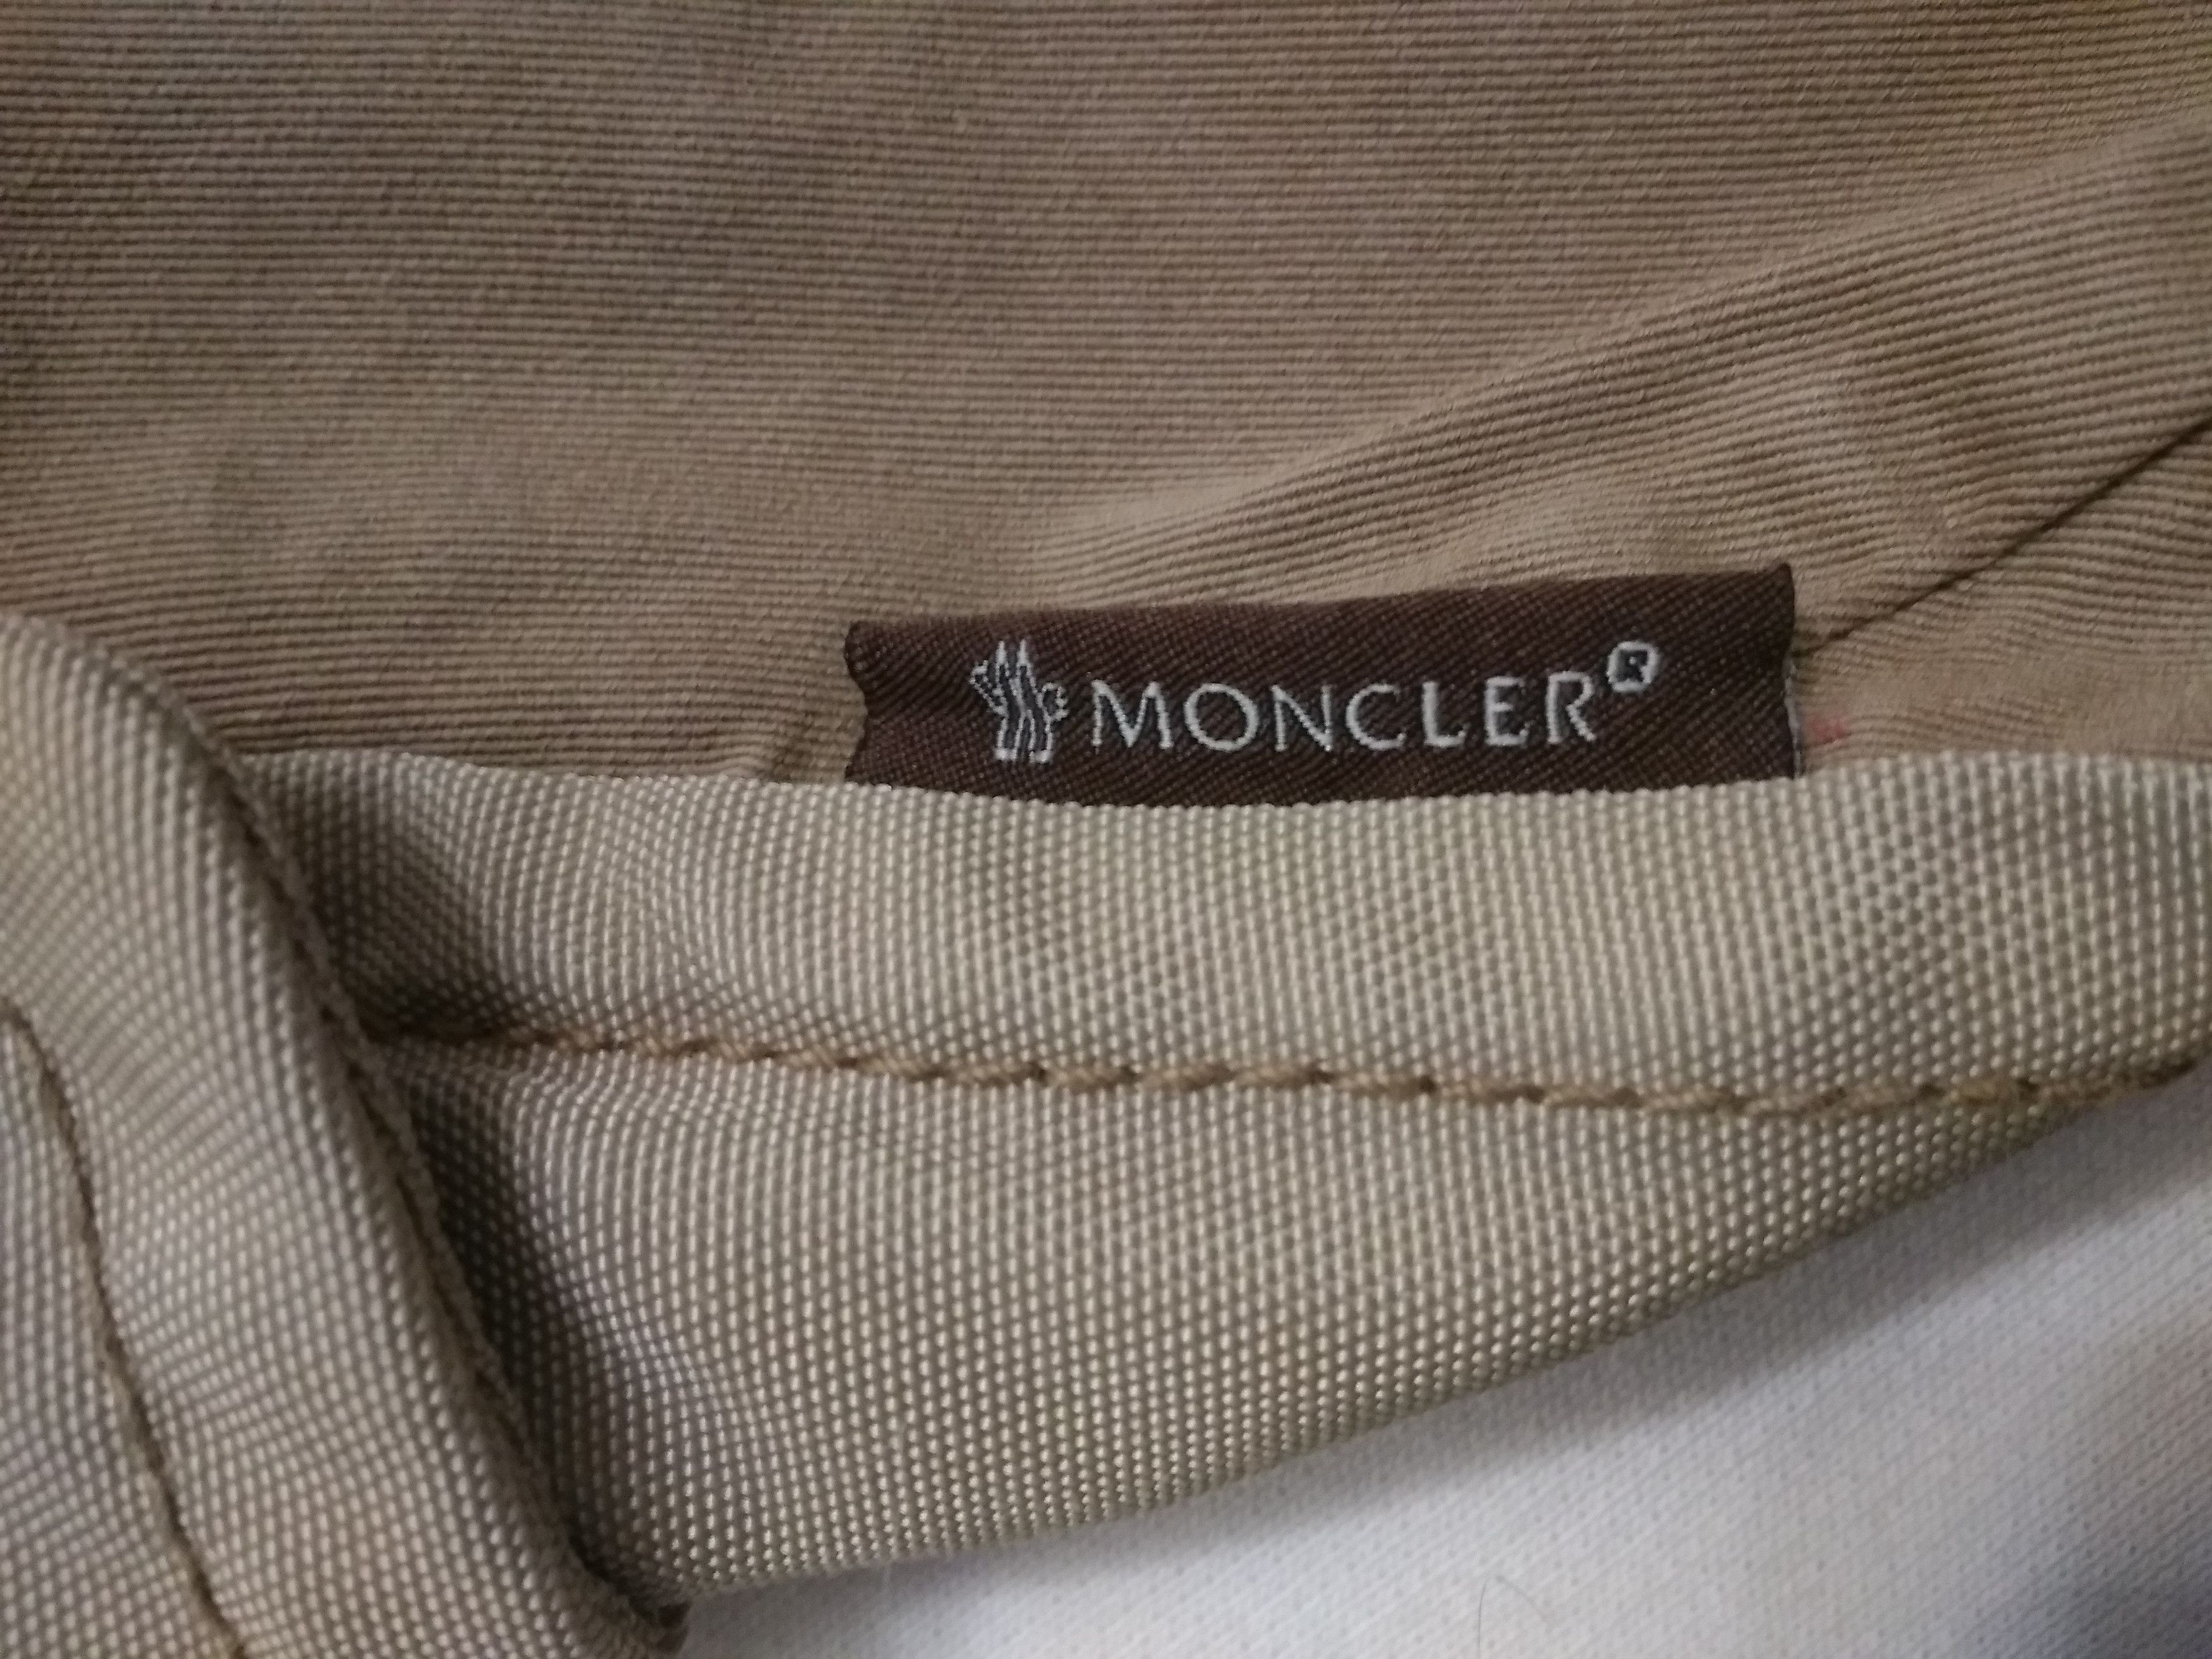 Moncler MONCLER RARE WOMAN Vintage Light Jackets Size M / US 6-8 / IT 42-44 - 3 Thumbnail